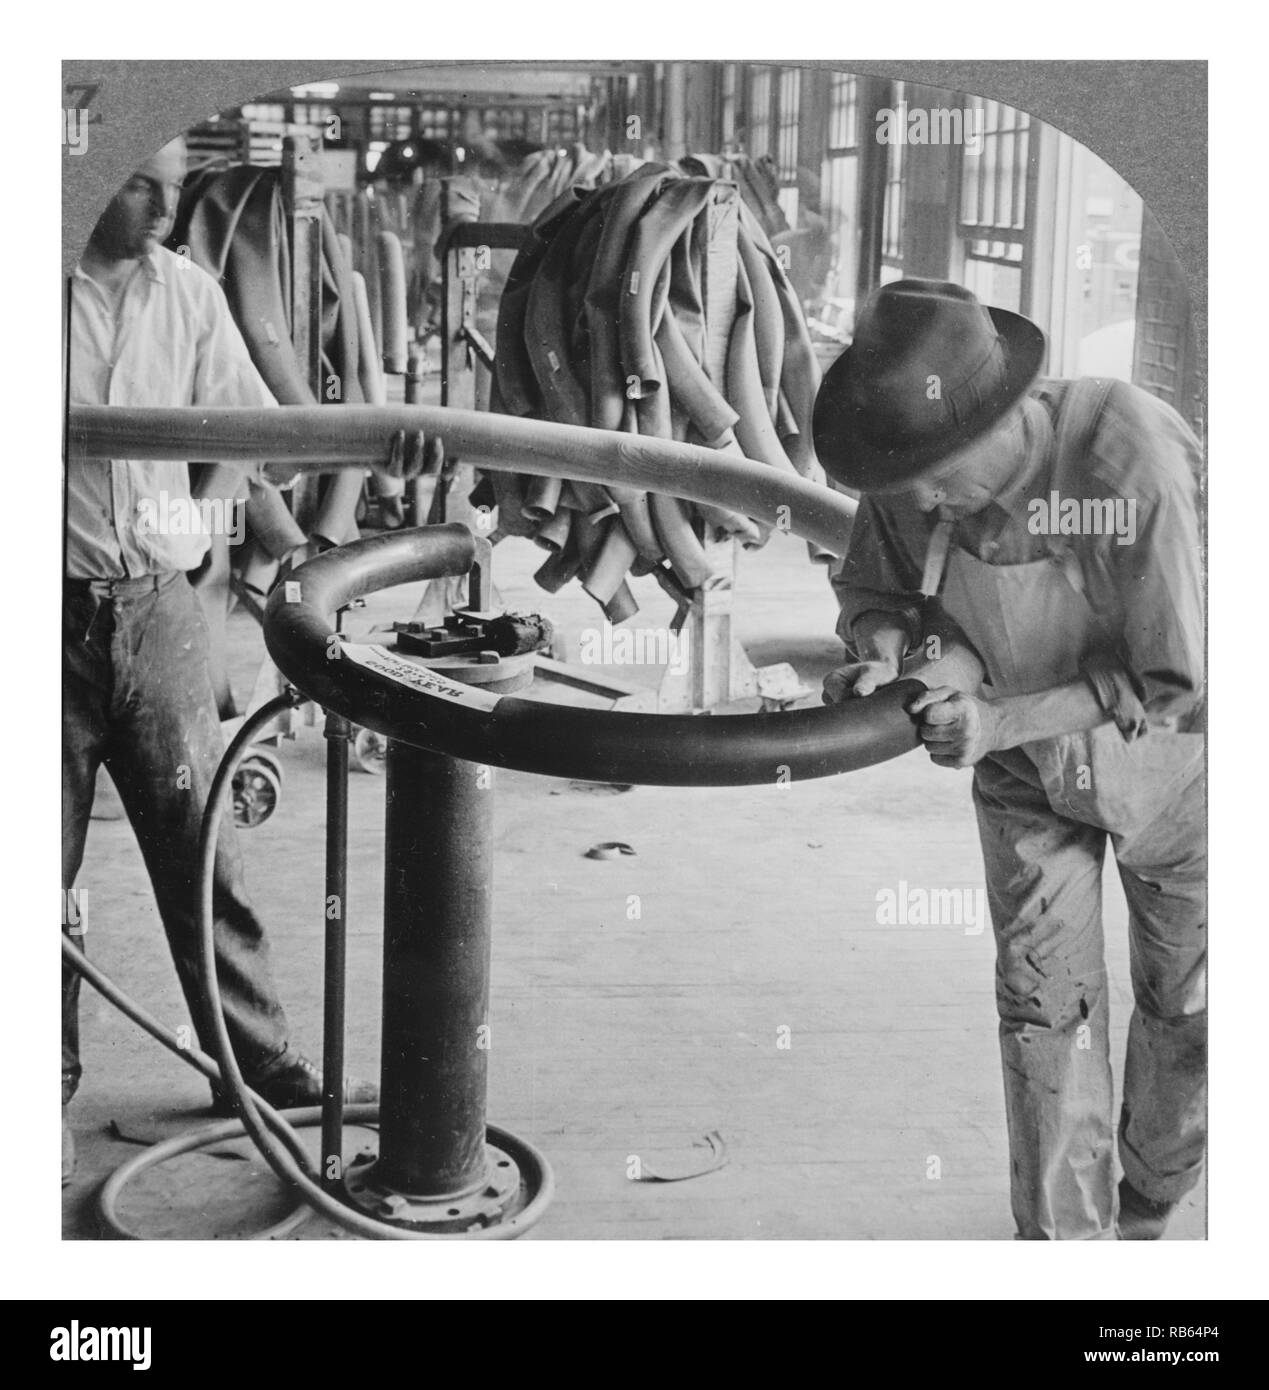 Photographie prise à partir de l'usine de pneus Goodyear décapage des travailleurs d'un tube sur un mandrin avant leur envoi à la guérison. Datée 1928 Banque D'Images